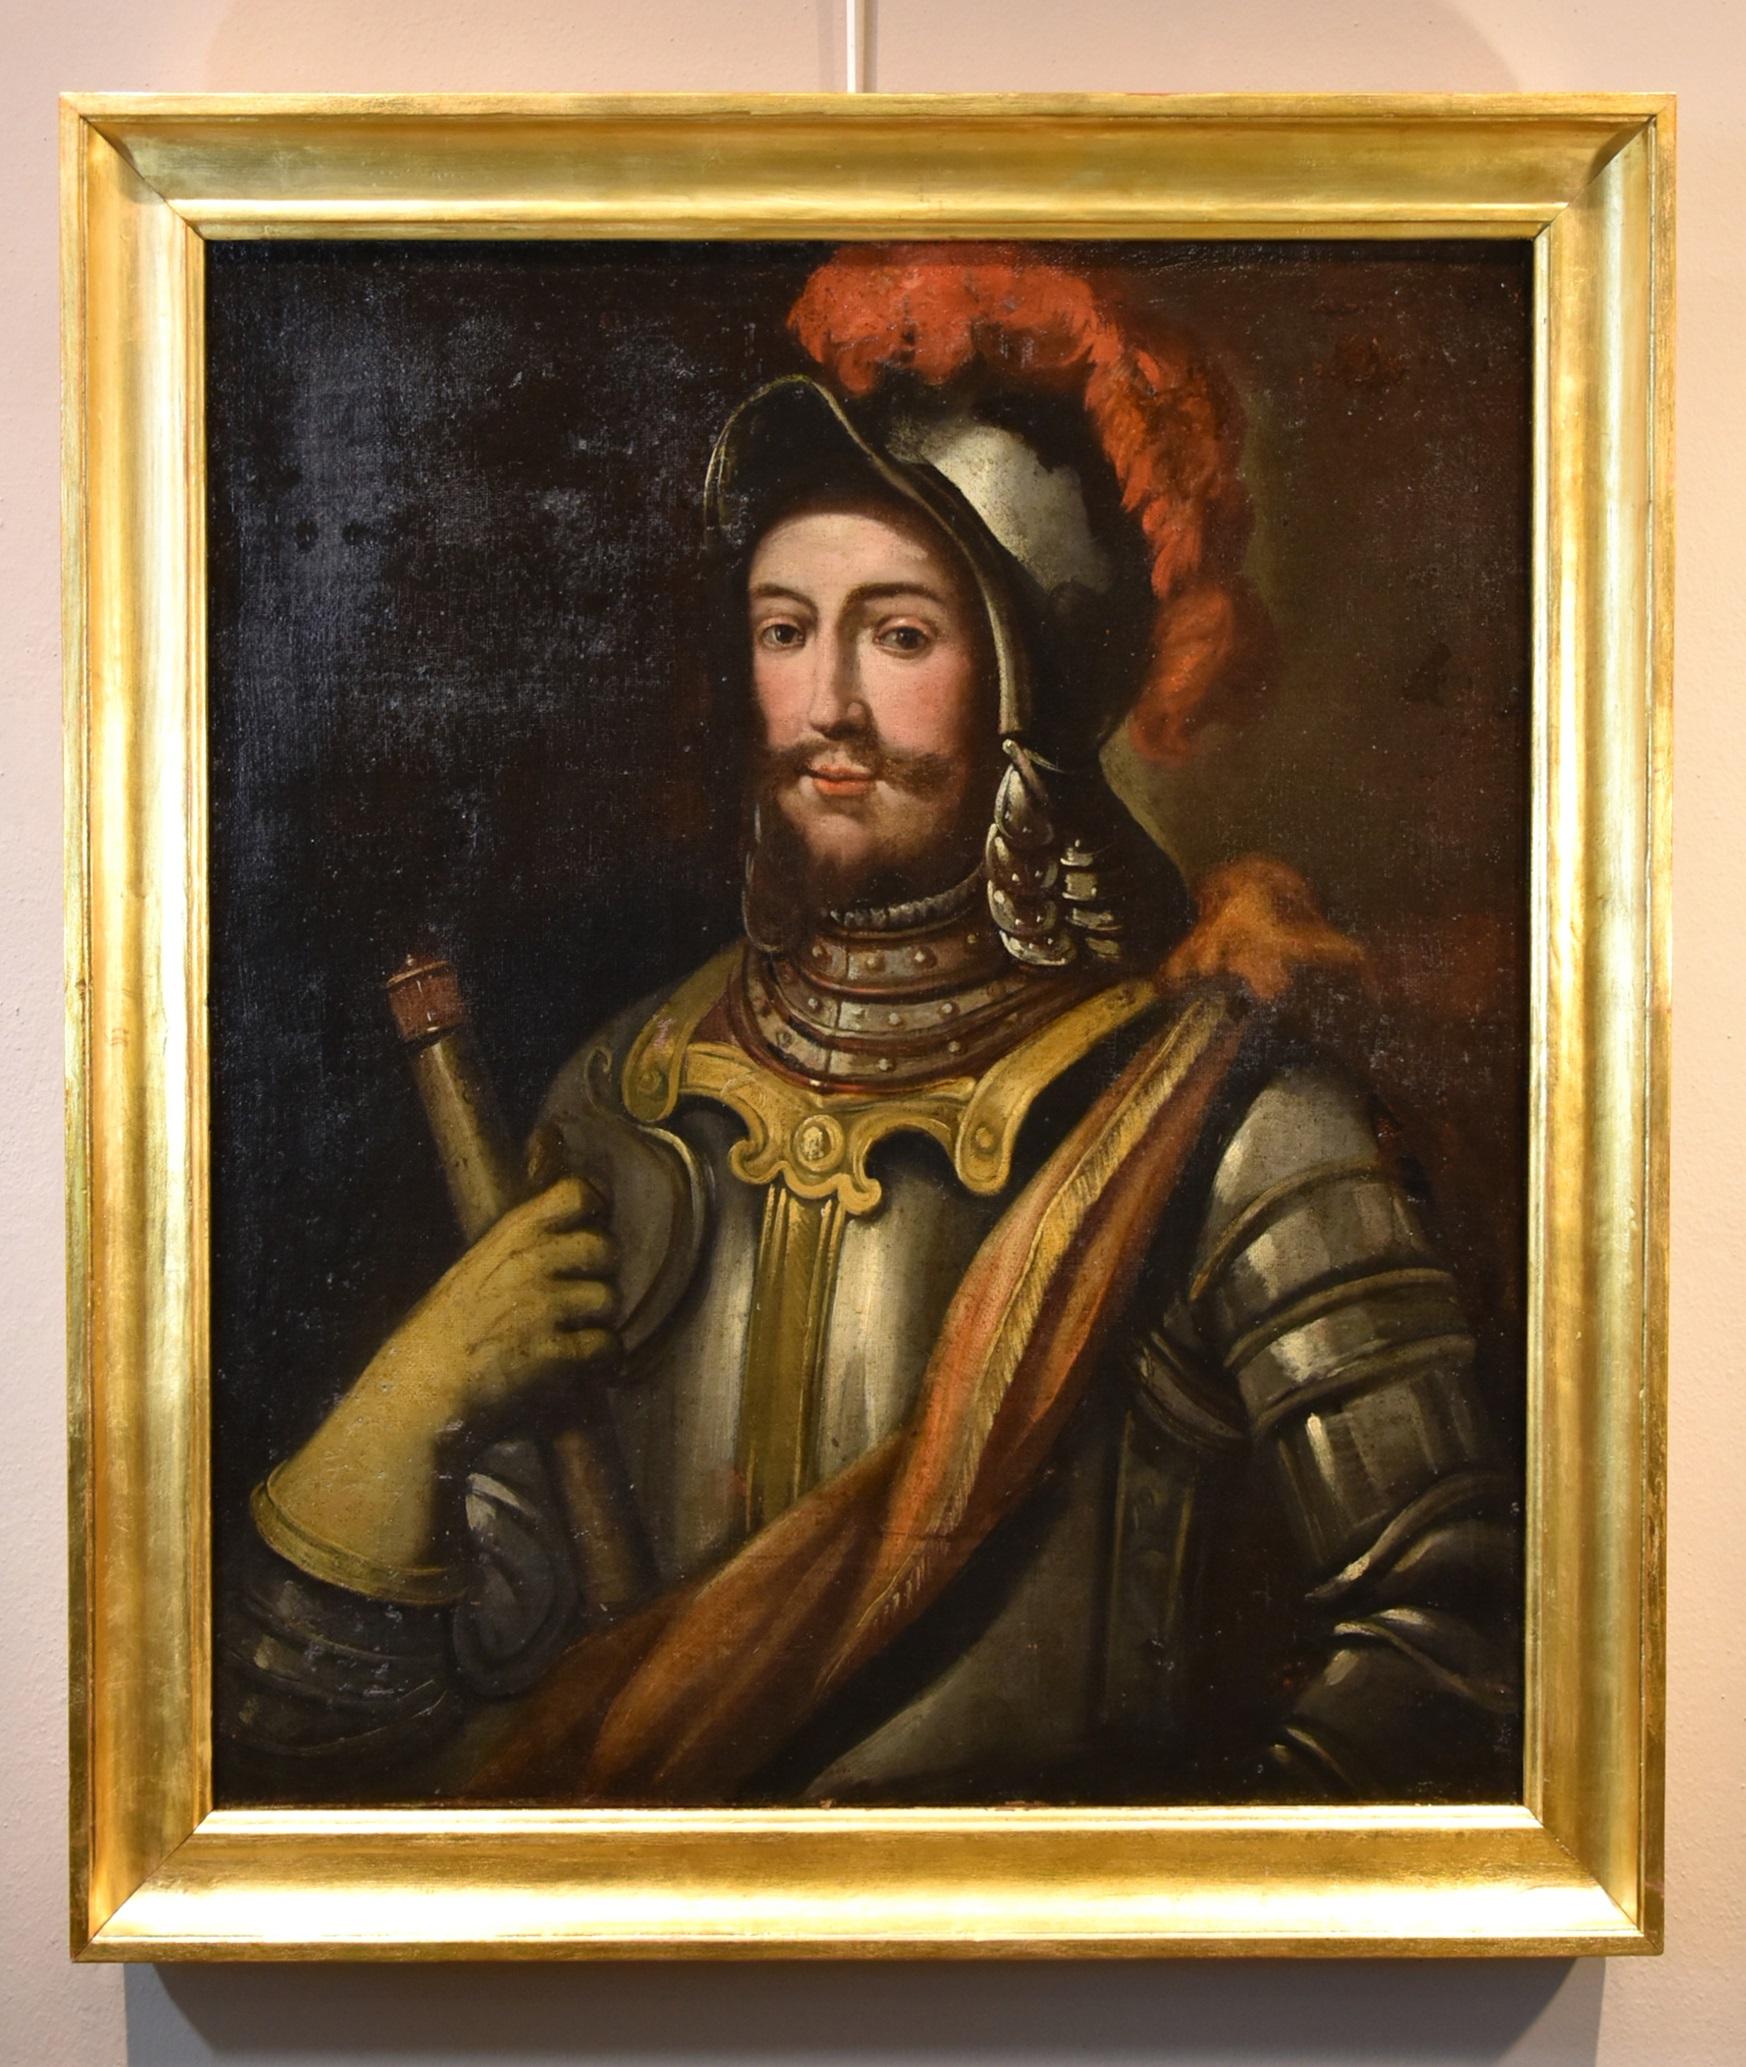 Portrait de chevalier huile sur toile 17ème siècle école lombard maître ancien Italie